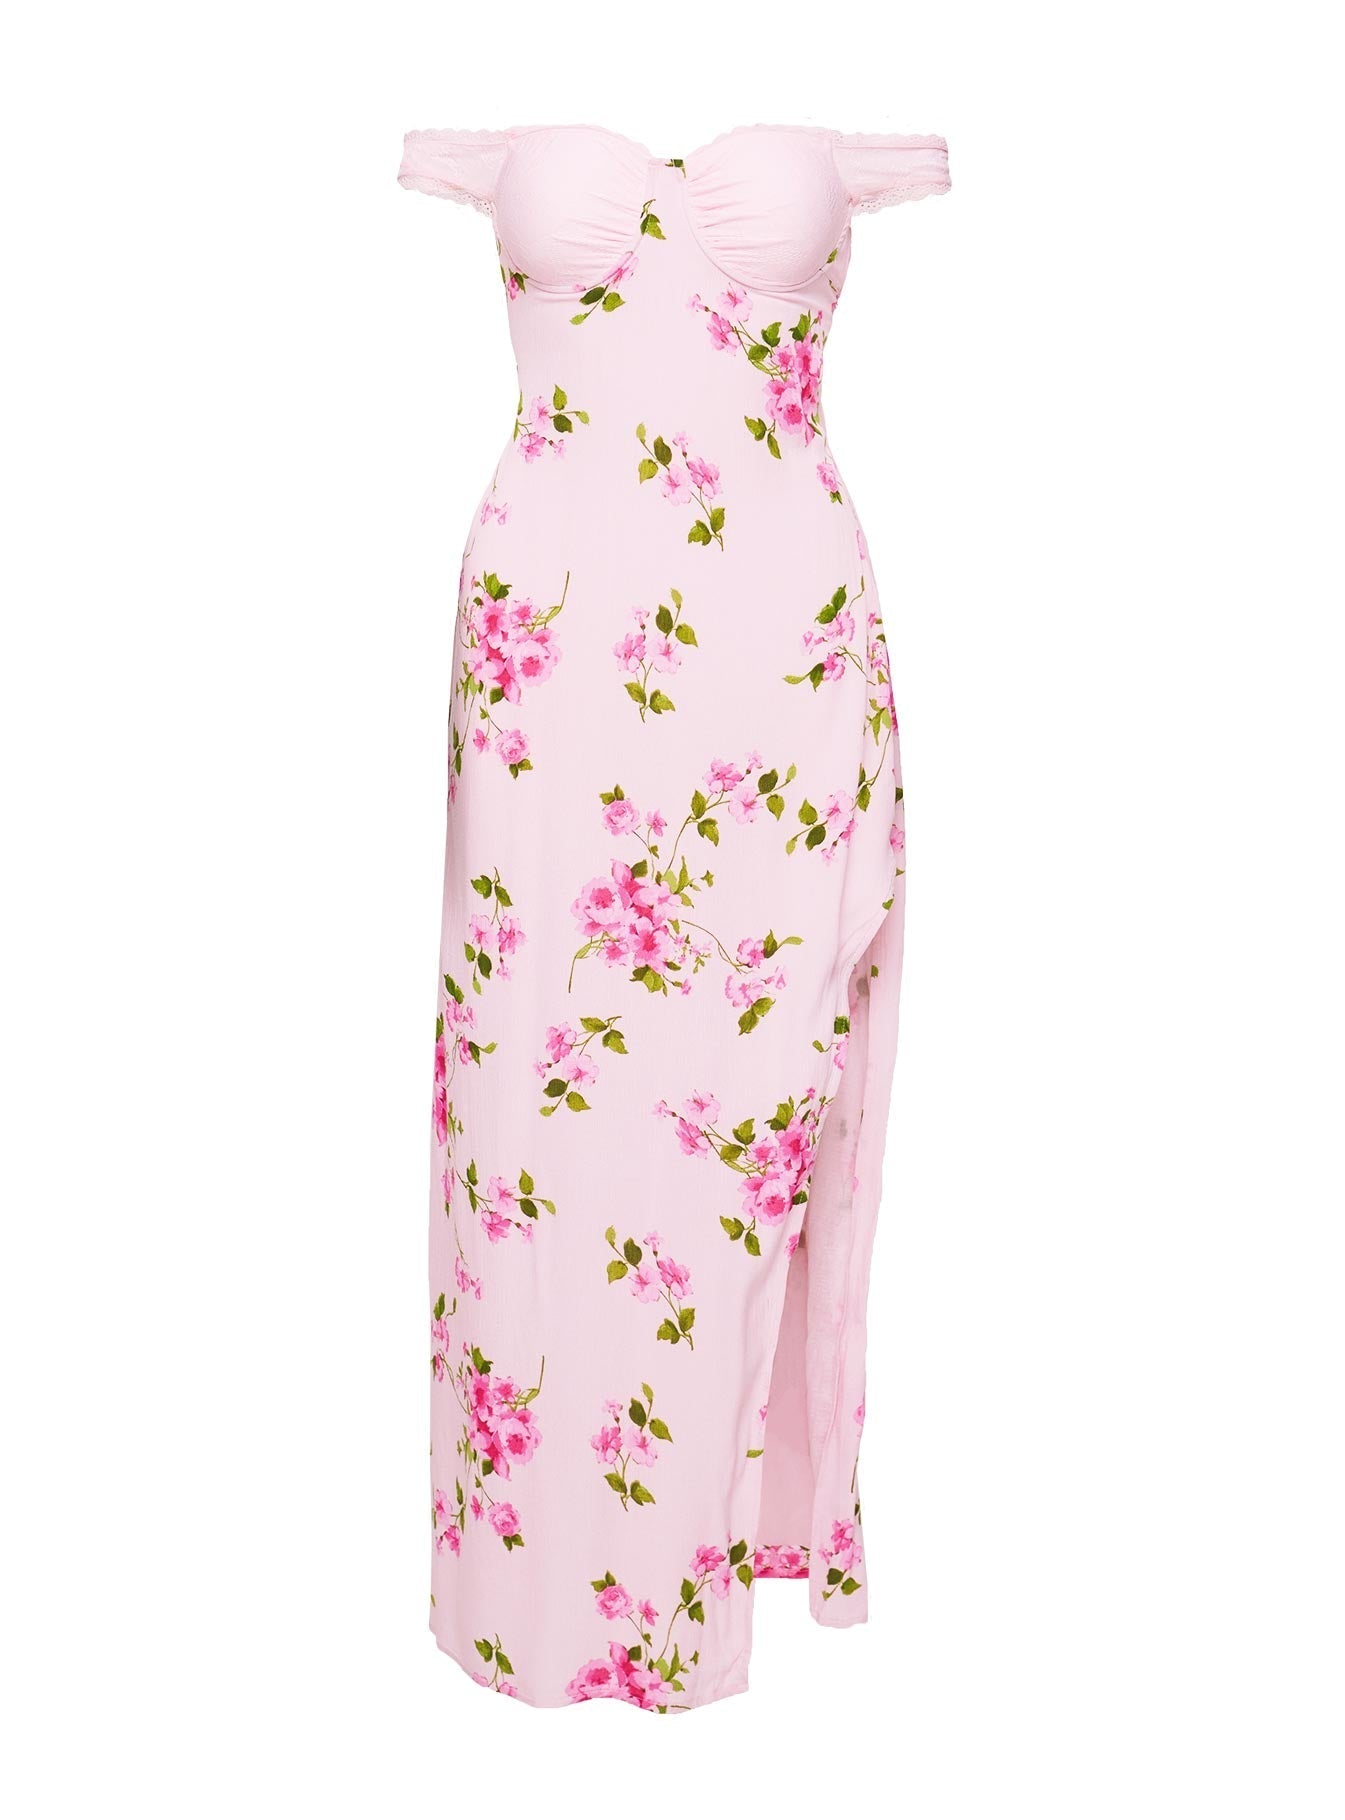 Emmeline Off The Shoulder Maxi Dress Pink Floral